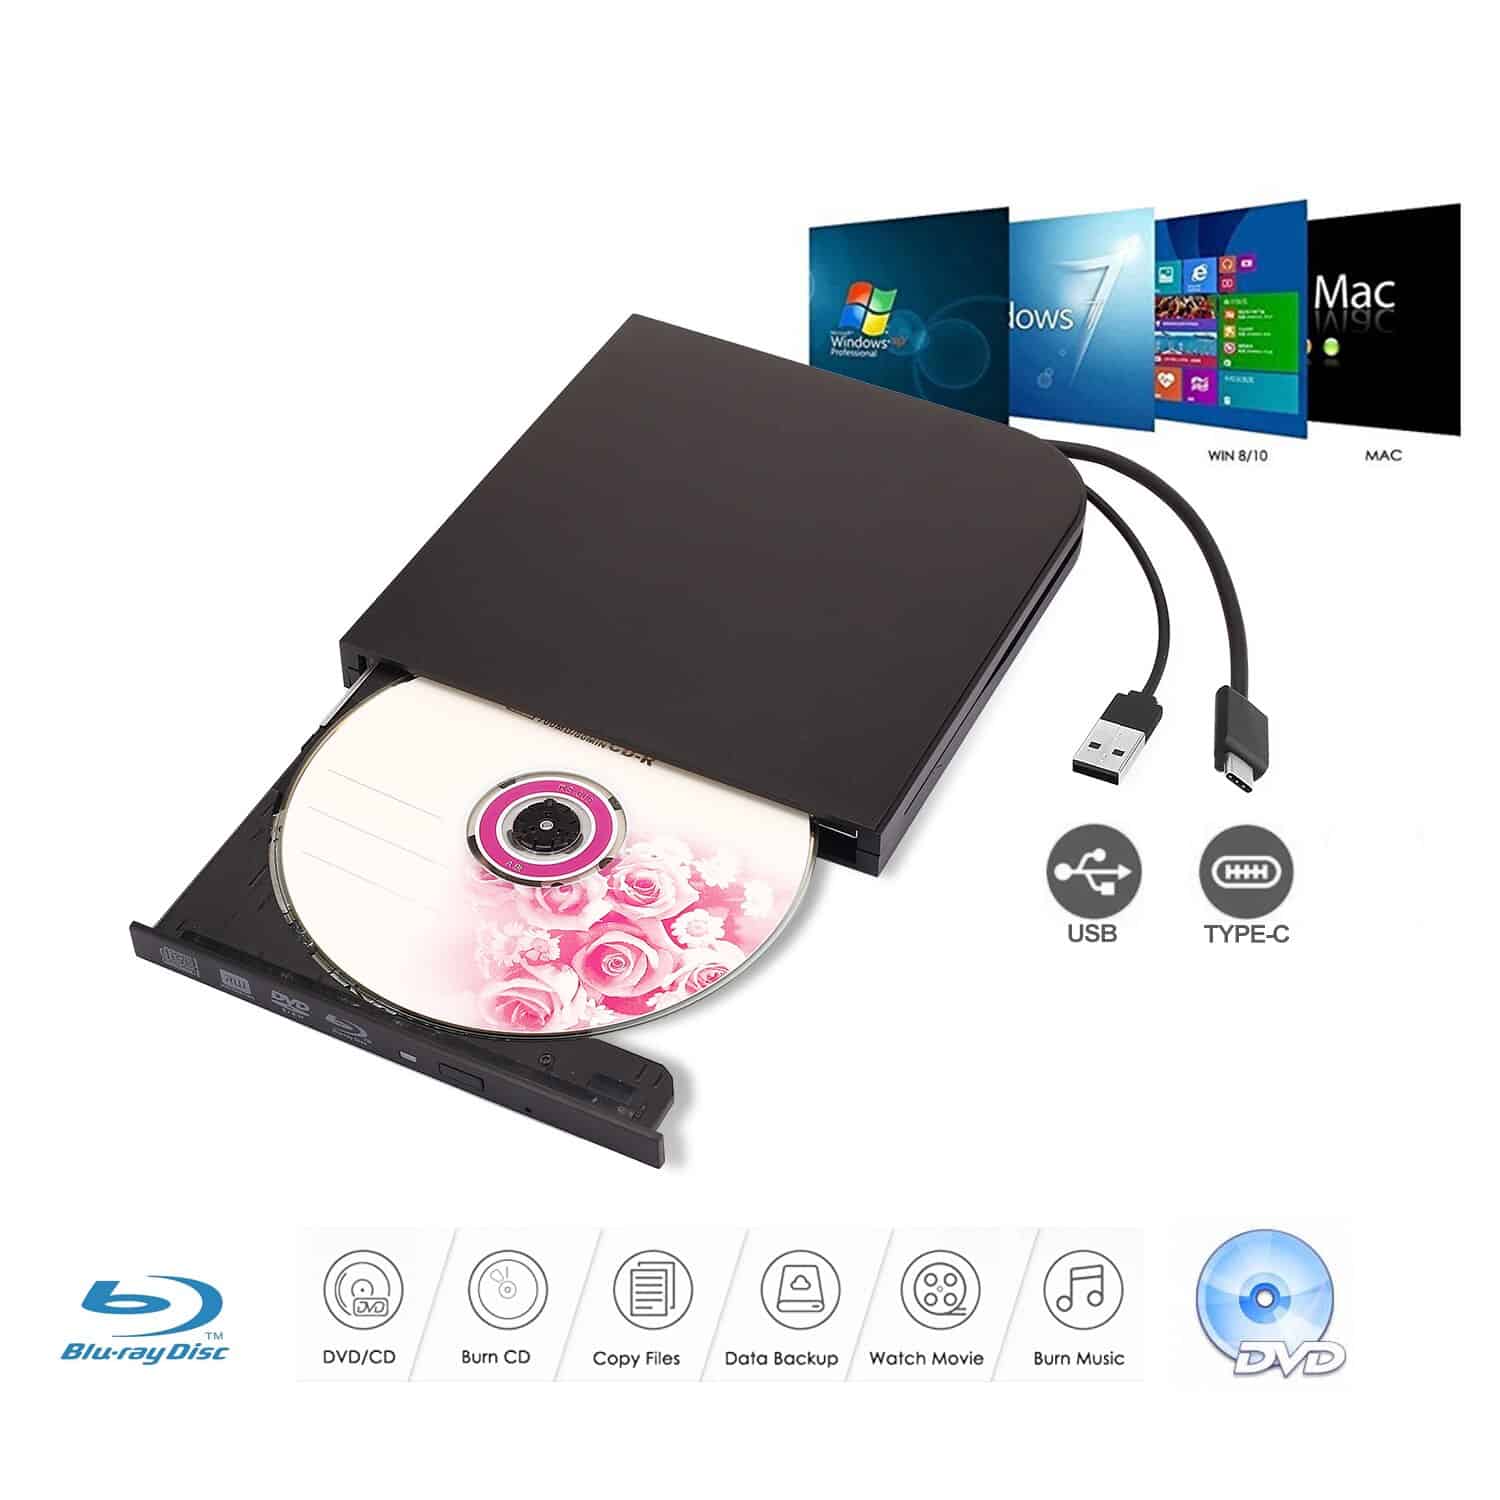 External Blu-Ray DVD Drive Burner Player USB3.0 Type-C DVD-RW VCD CD RW Burner Support BD-ROM BD-R CD-ROM CD-R DVD-ROW DVD-R